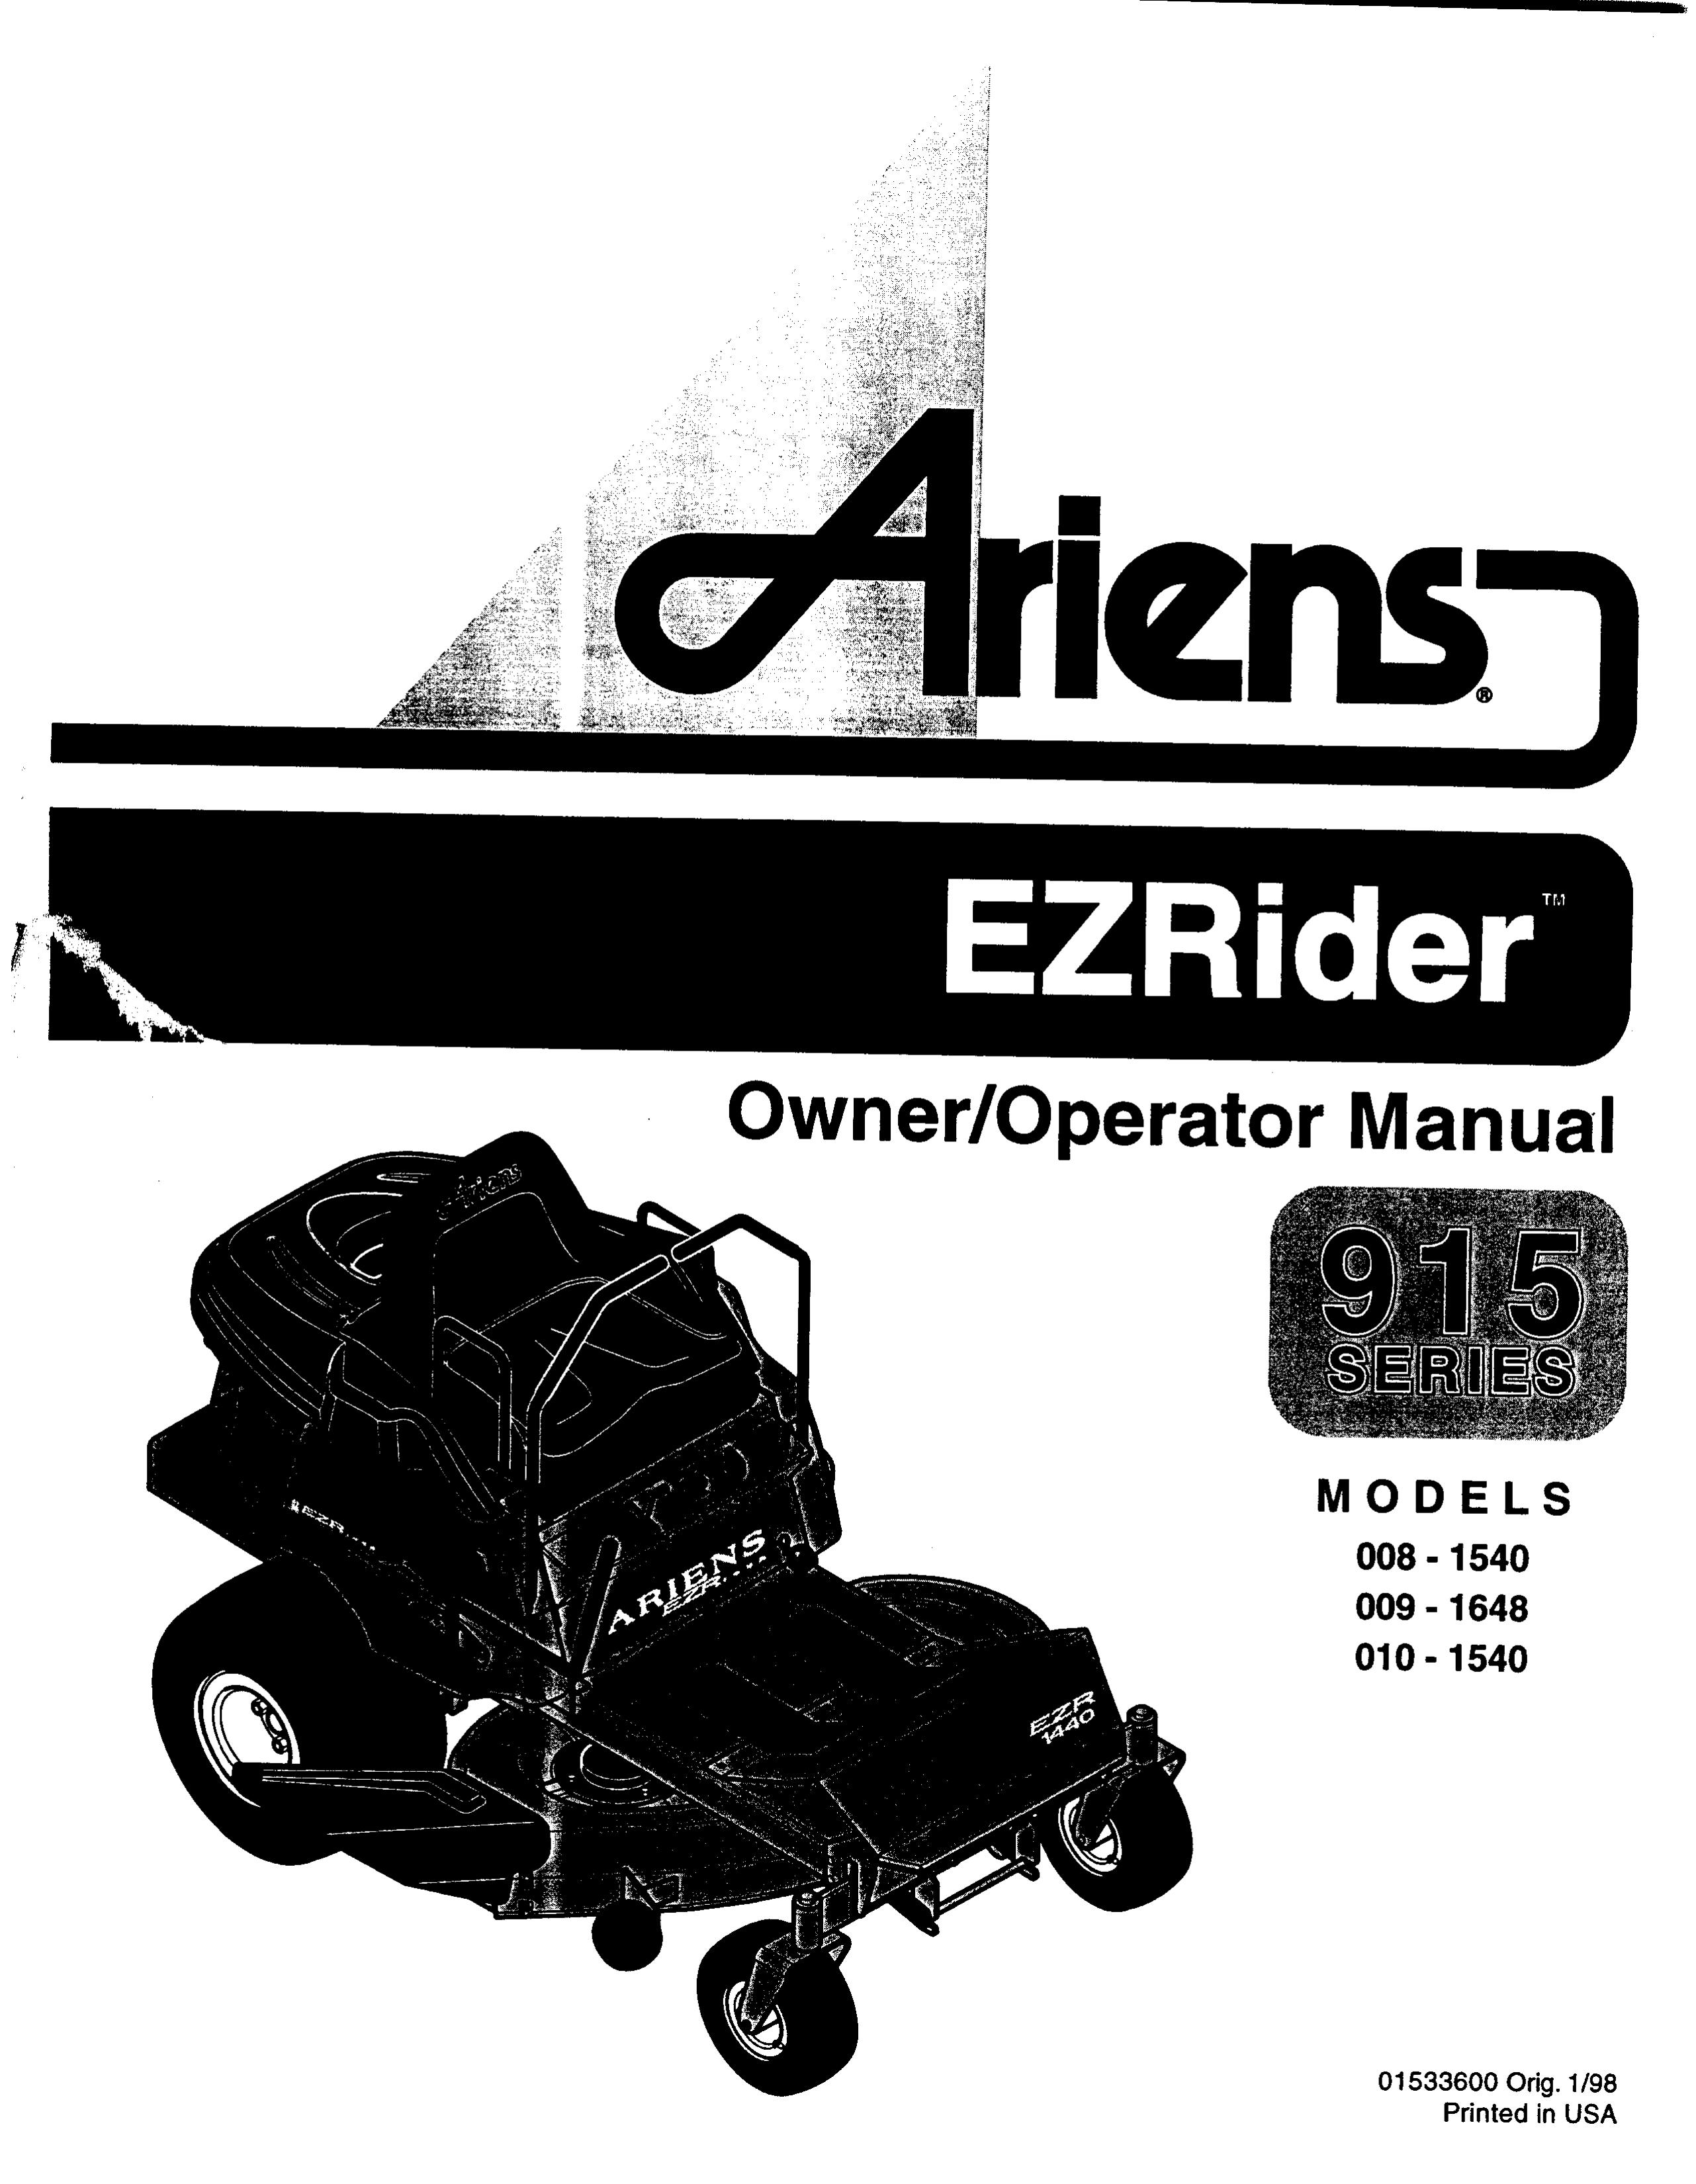 Ariens 010-1540 Lawn Mower User Manual